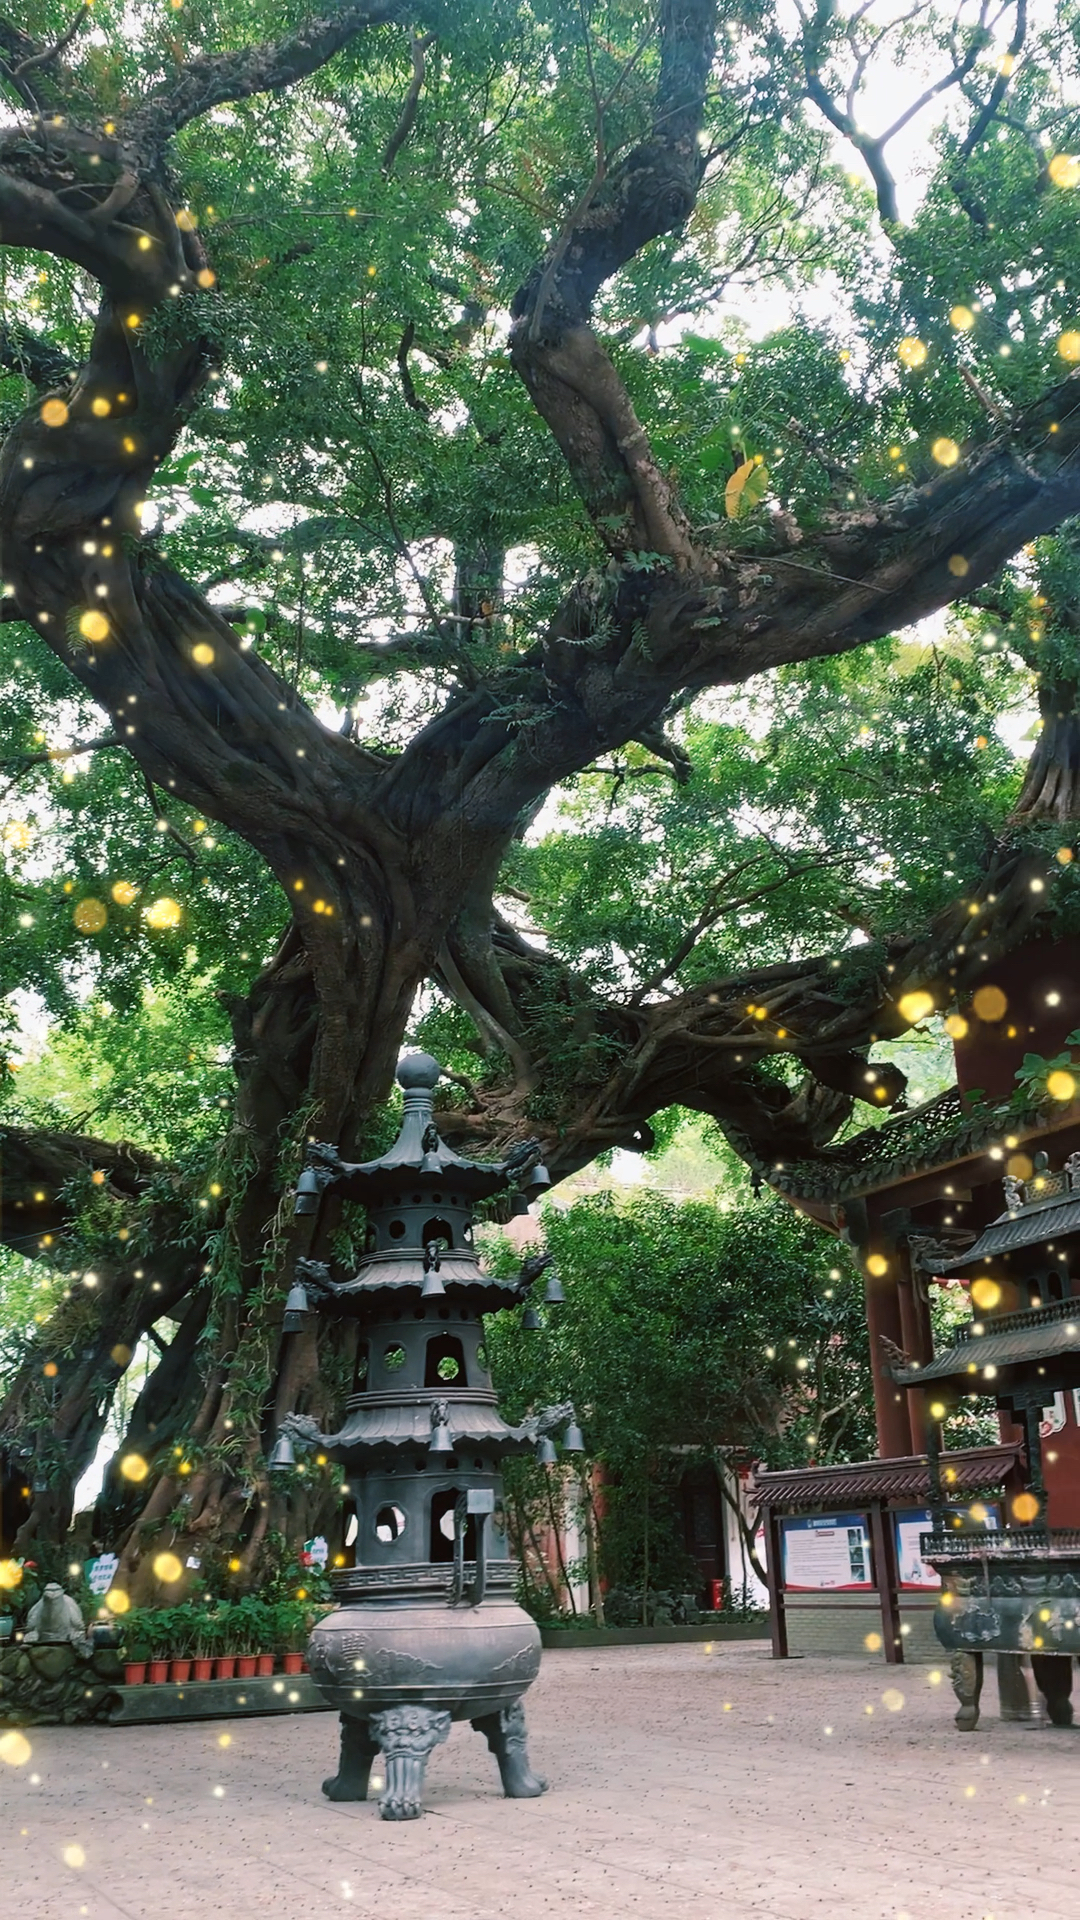 自驾旅行来到英德丰盛古寺,寺里古树距今一千五百年,依然枝繁叶茂